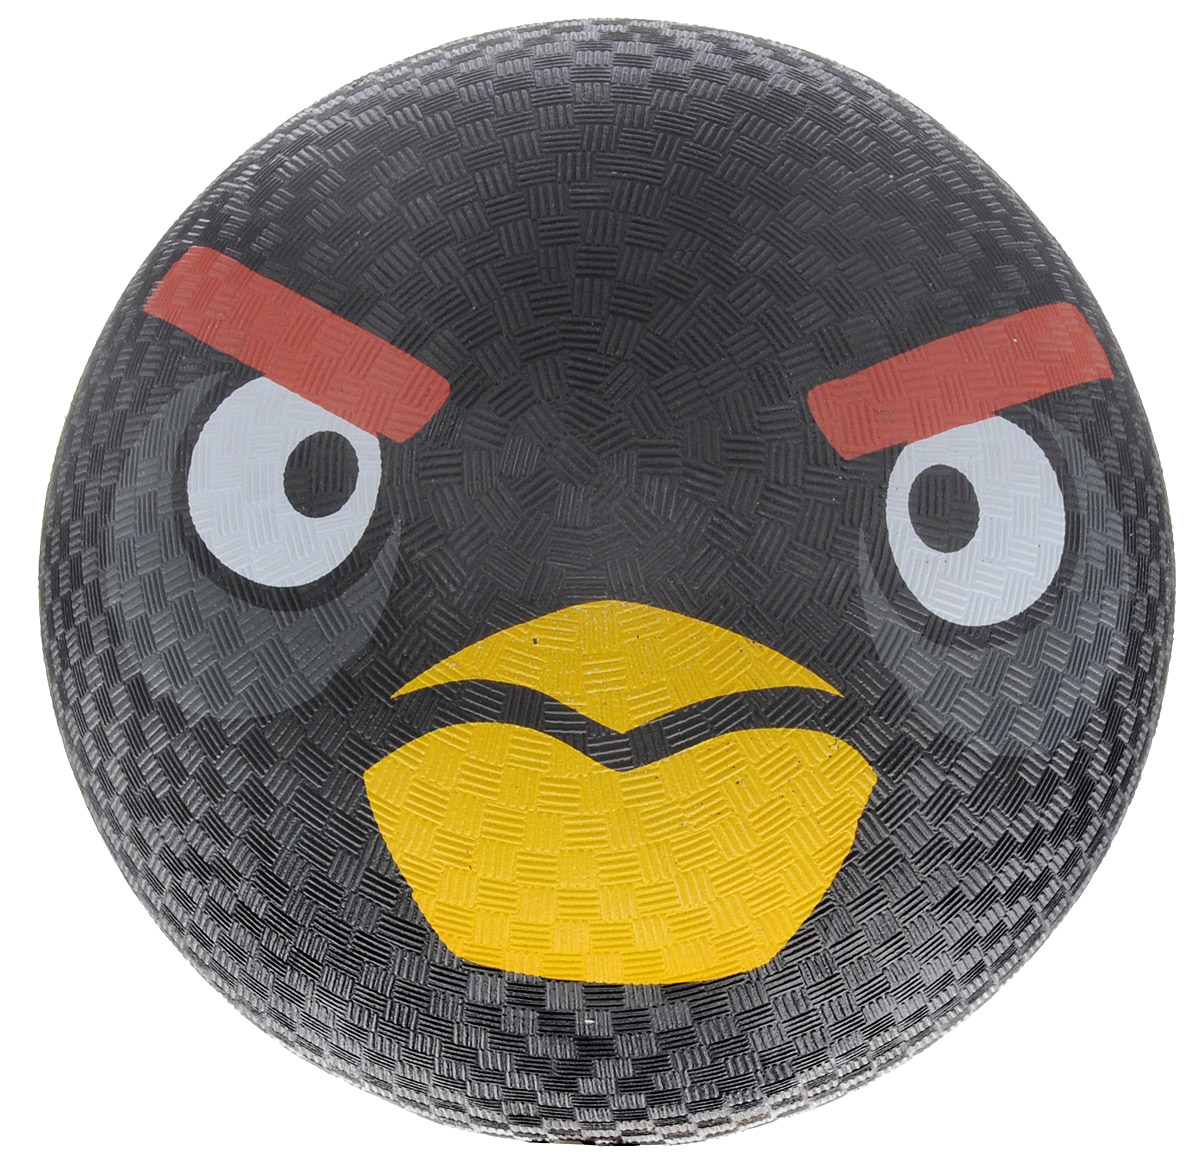 Angry Birds  - Angry Birds91228   Angry Birds     .             Angry Birds.      ,   ,    !      !